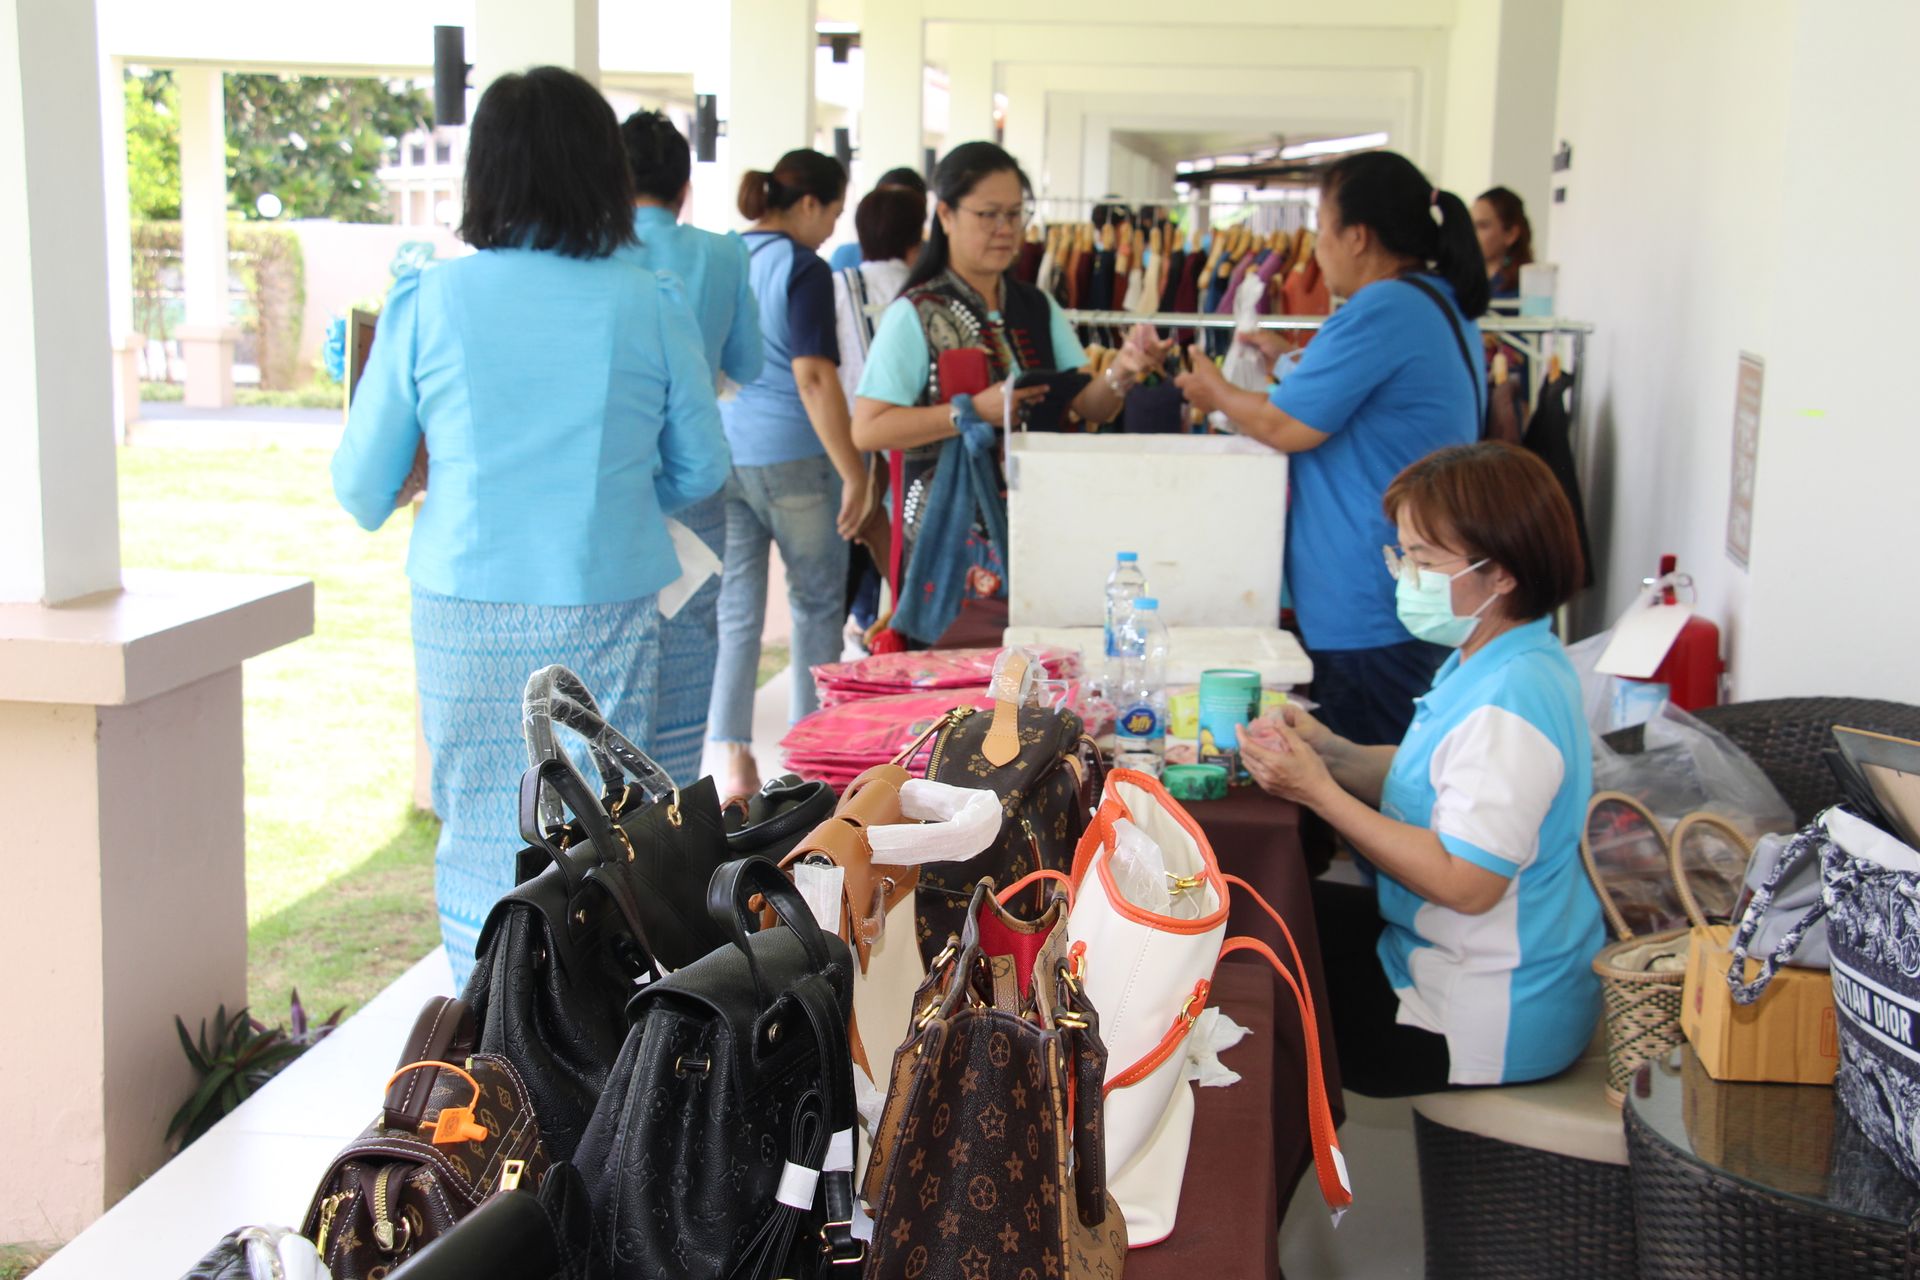 เชียงใหม่จัดงานวันสตรีไทย  เชิดชูเกียรติหญิงไทยรวมพัฒนาชุมชน-สังคม